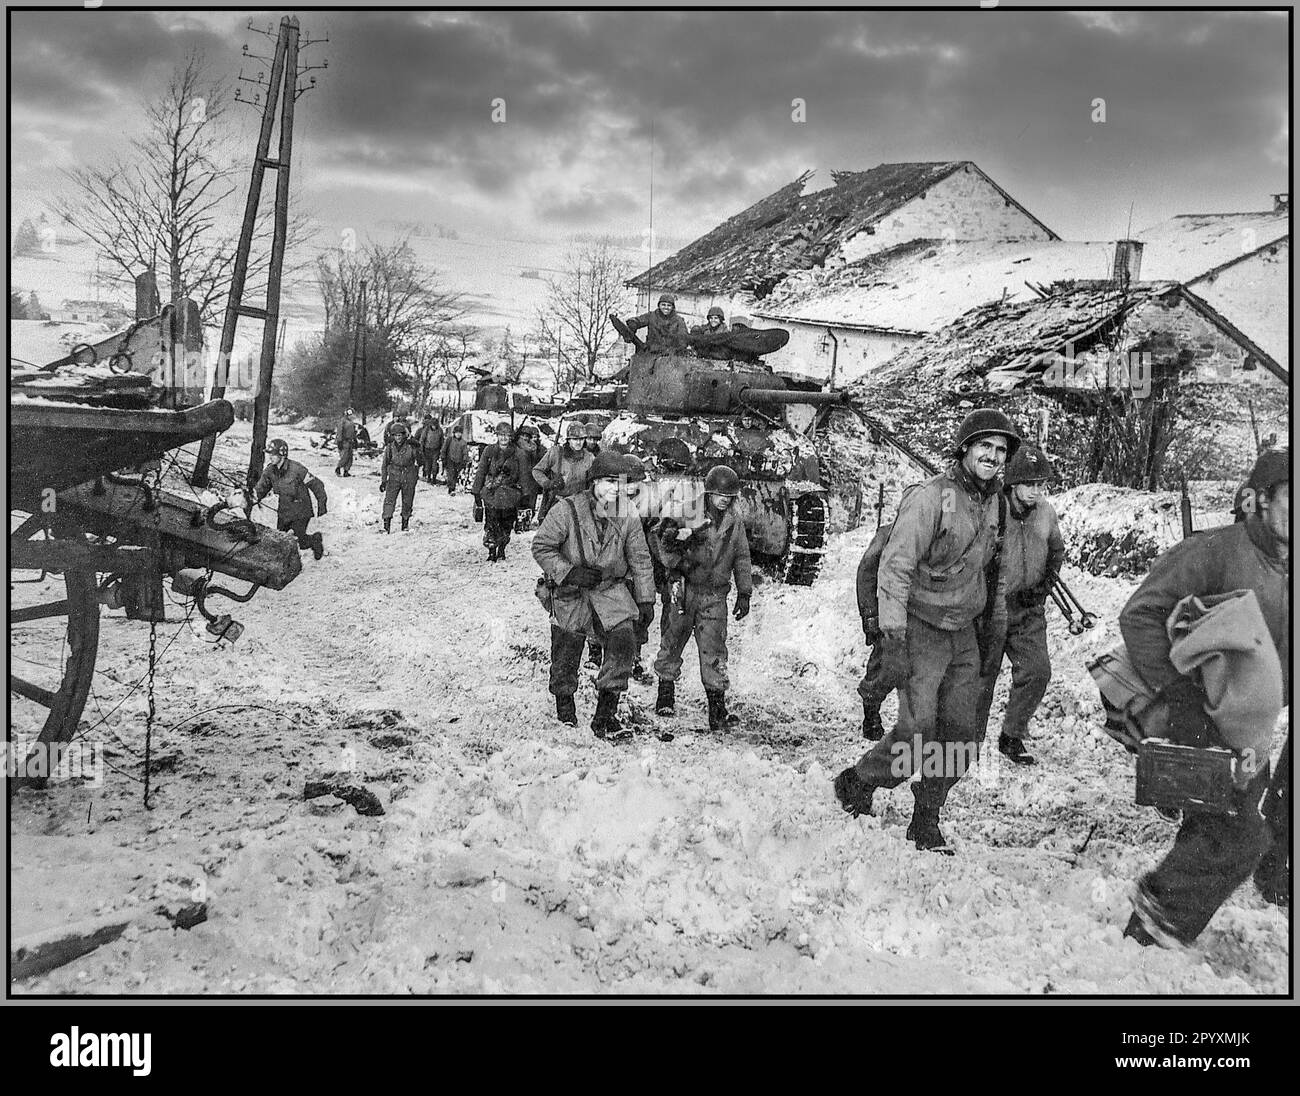 BATTAGLIA DEL RIGONFIAMENTO WW2 soldati americani scagliano attraverso il fango e la neve durante la Battaglia del Bulge nel dicembre 1944. È stato l'inverno più freddo in 50 anni in Europa e si è sviluppato nella più grande battaglia con la Germania nazista occupazione sul fronte occidentale durante la seconda guerra mondiale Foto Stock